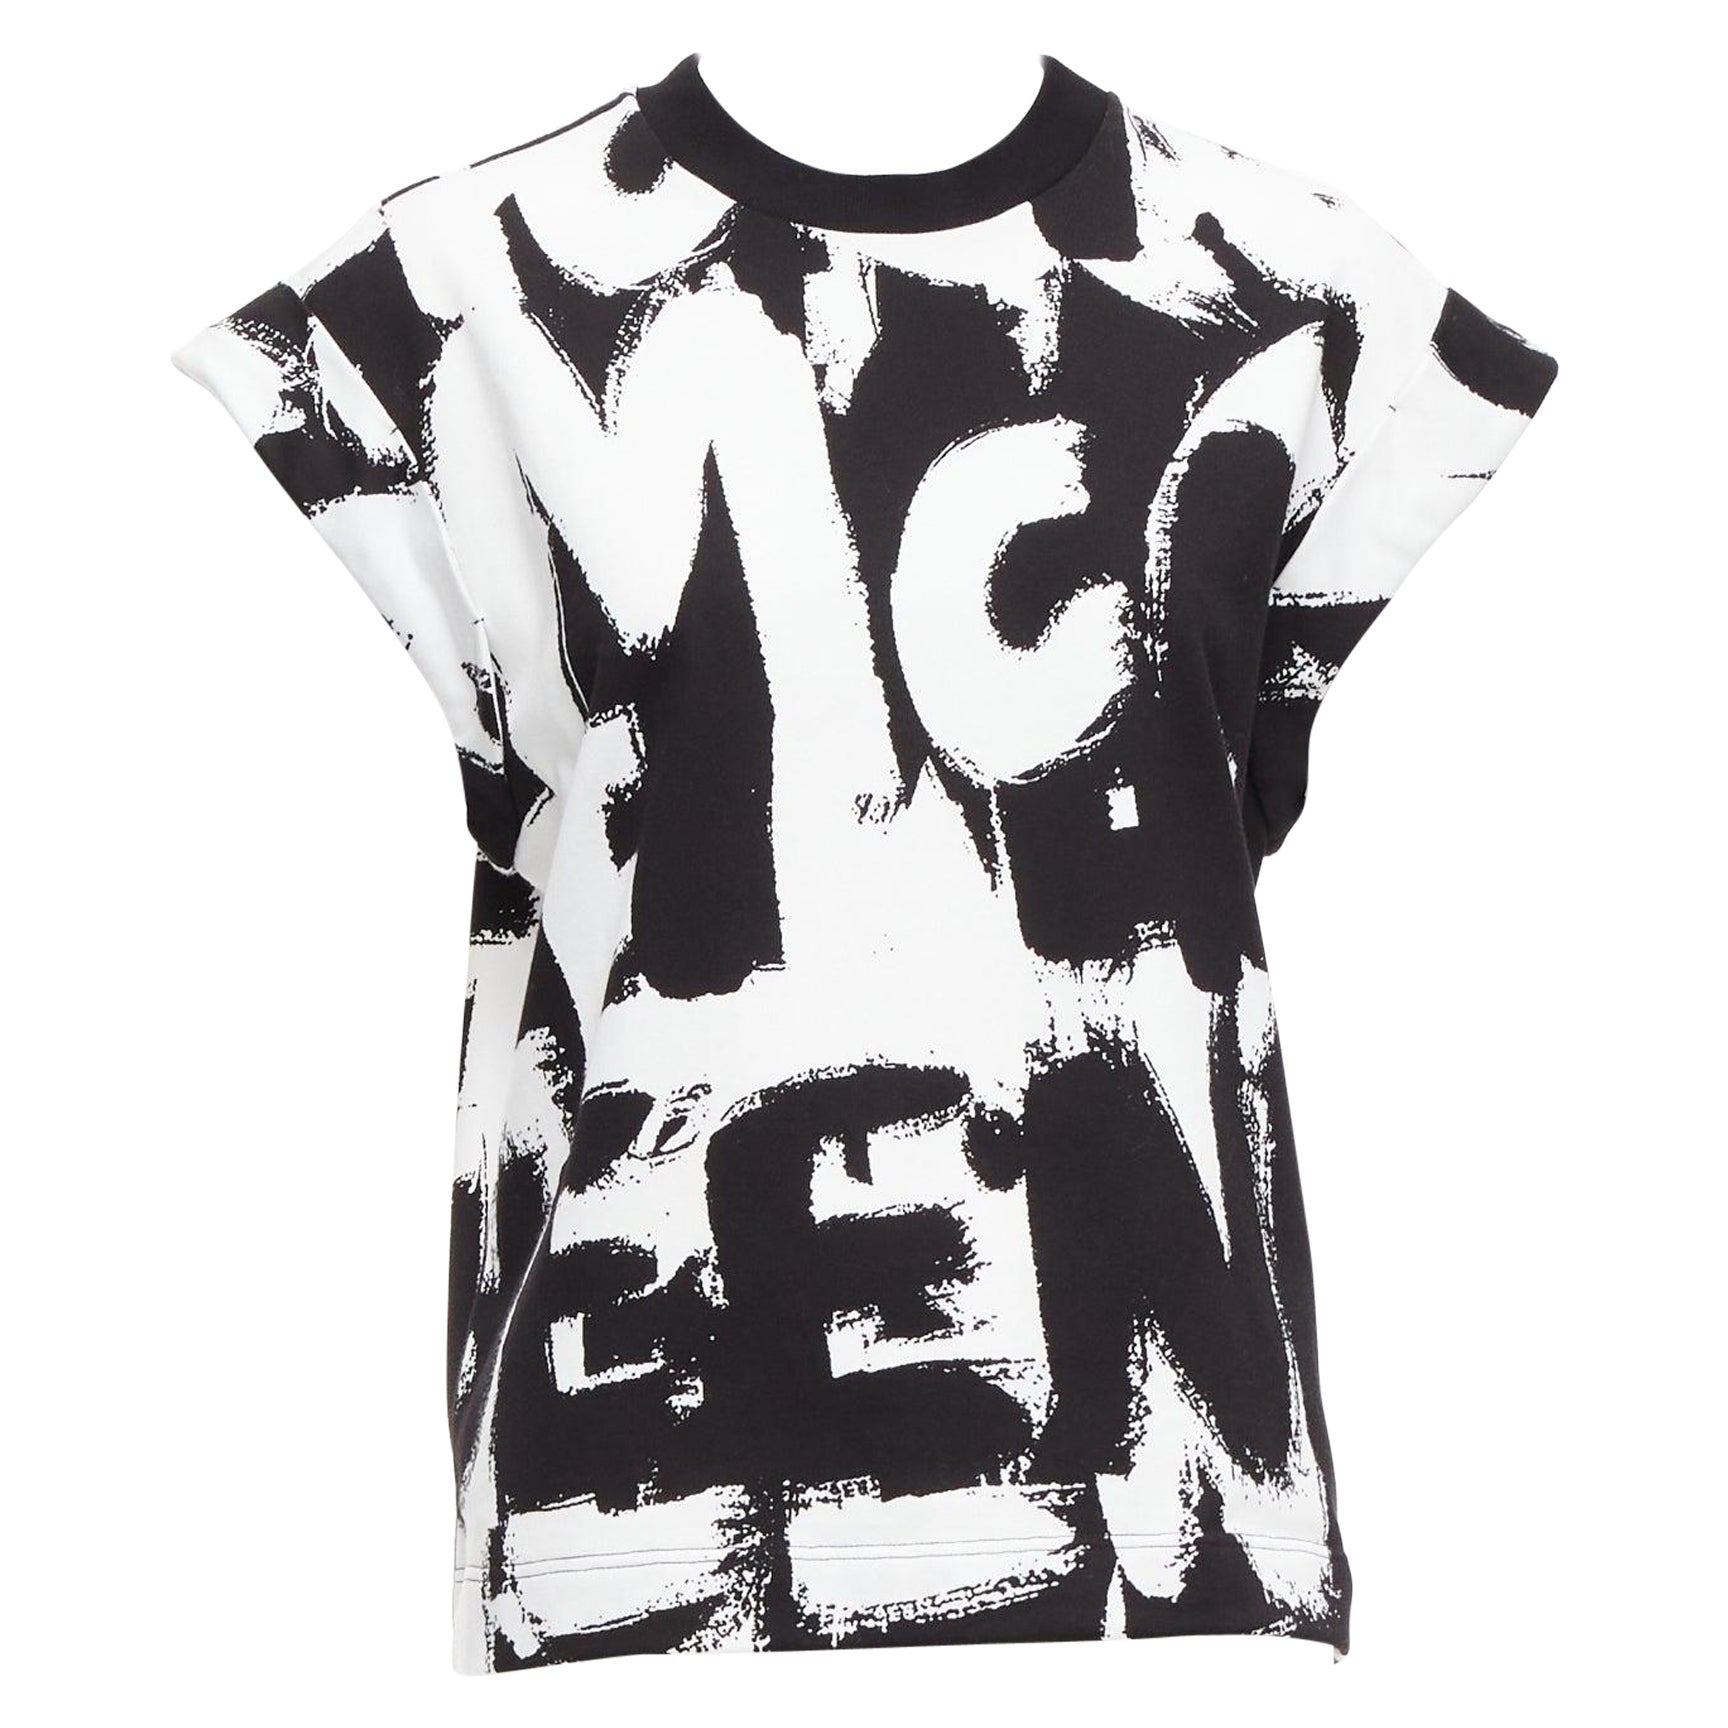 How do I spot a fake Alexander McQueen t-shirt?